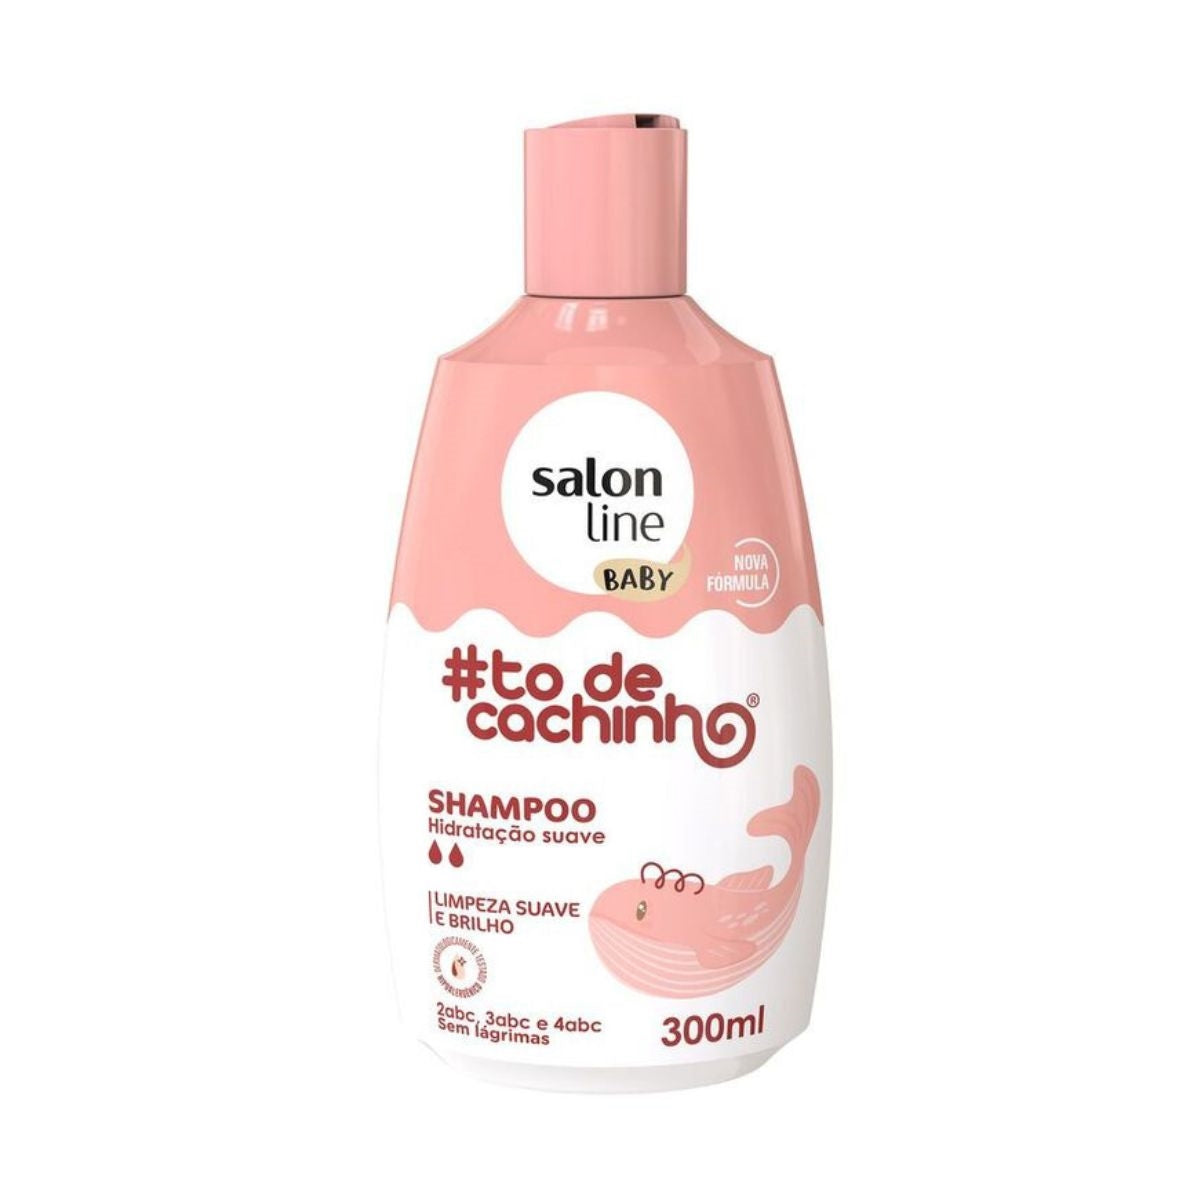 Salonlinie #Todecachinhos Baby 2,3,4 ABC - 300 ml Shampoo